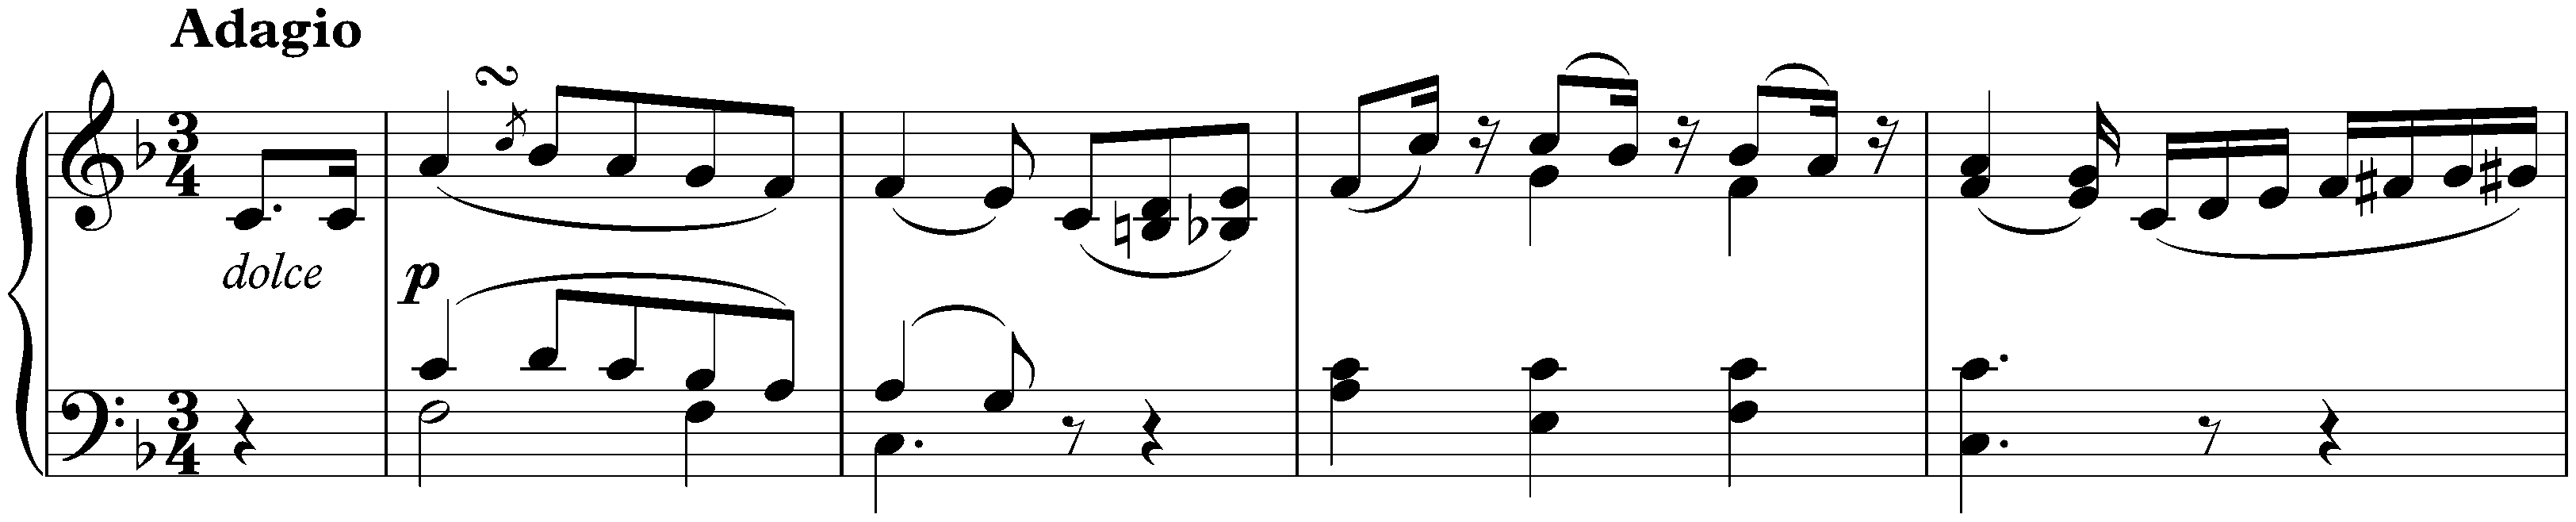 Sonata no. 1 in F minor, op. 2 no. 1; 2. Adagio